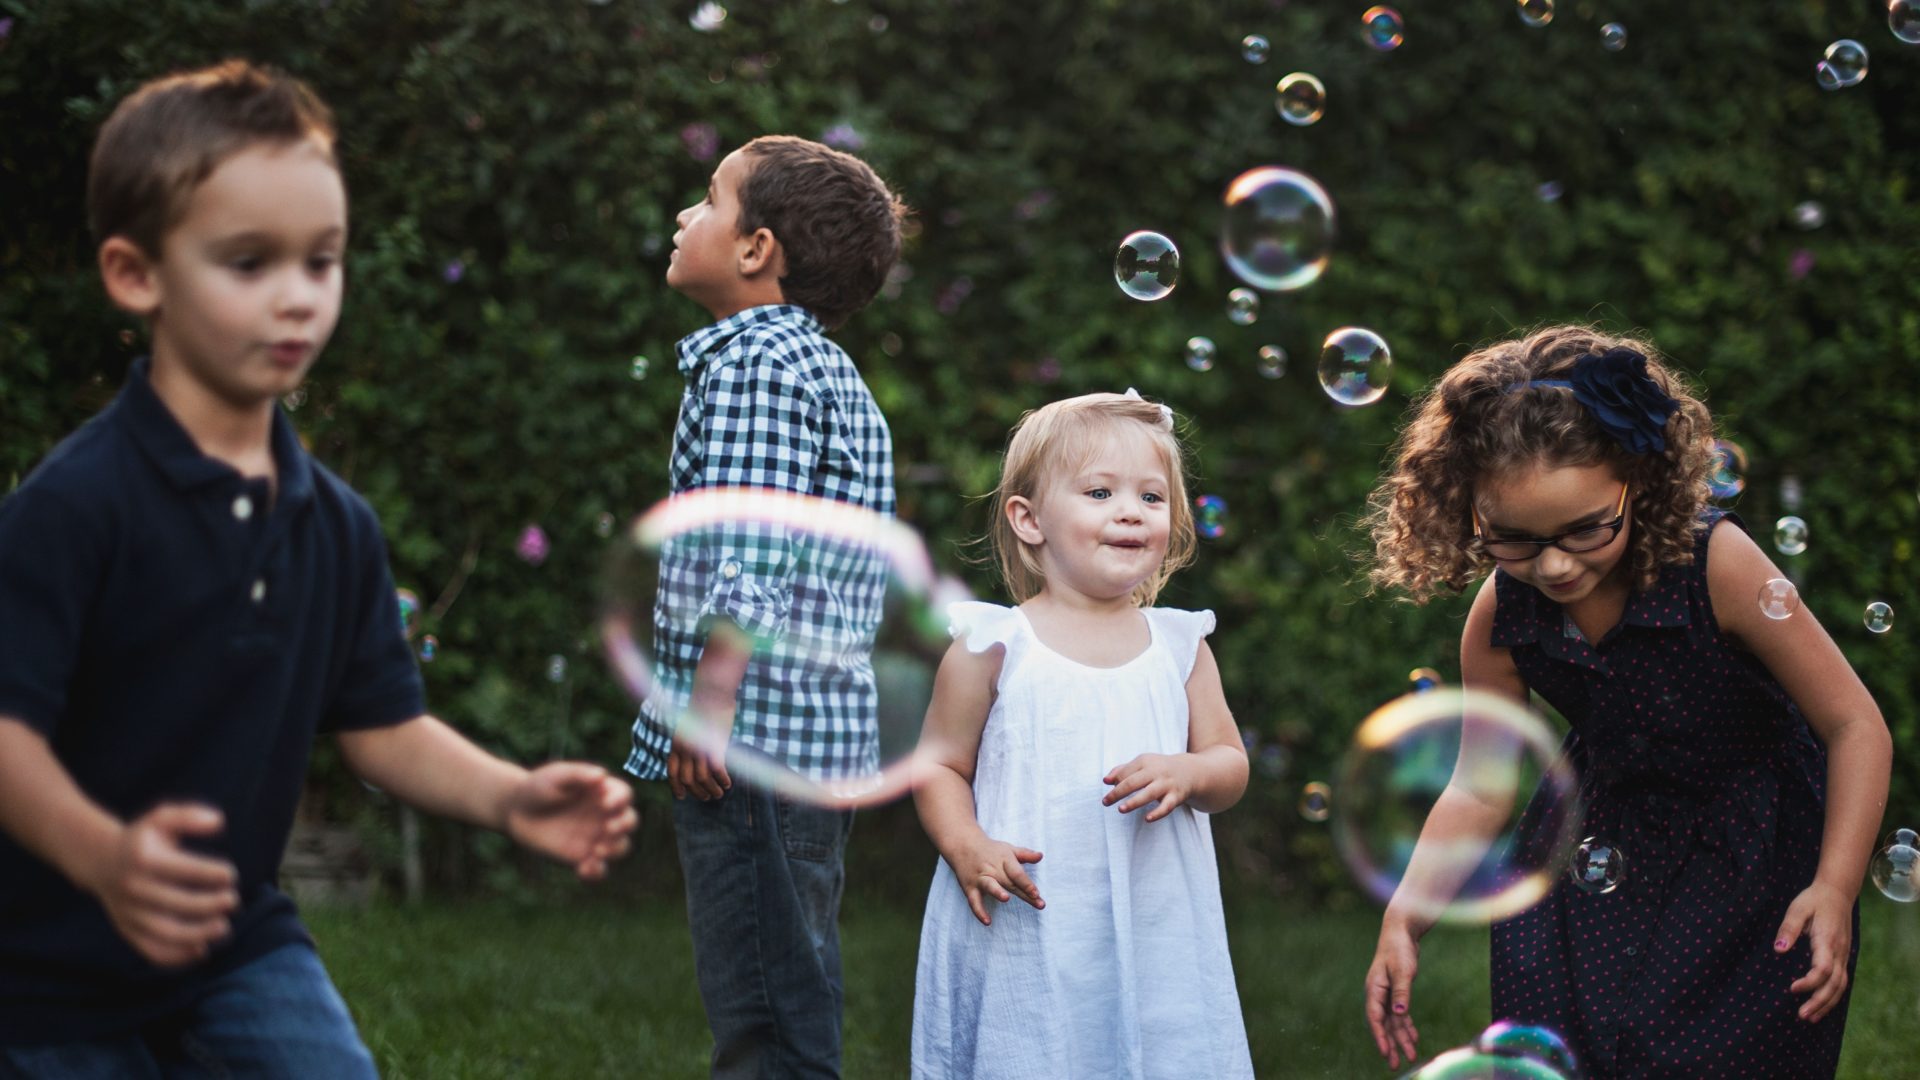 Kids outside blowing bubbles